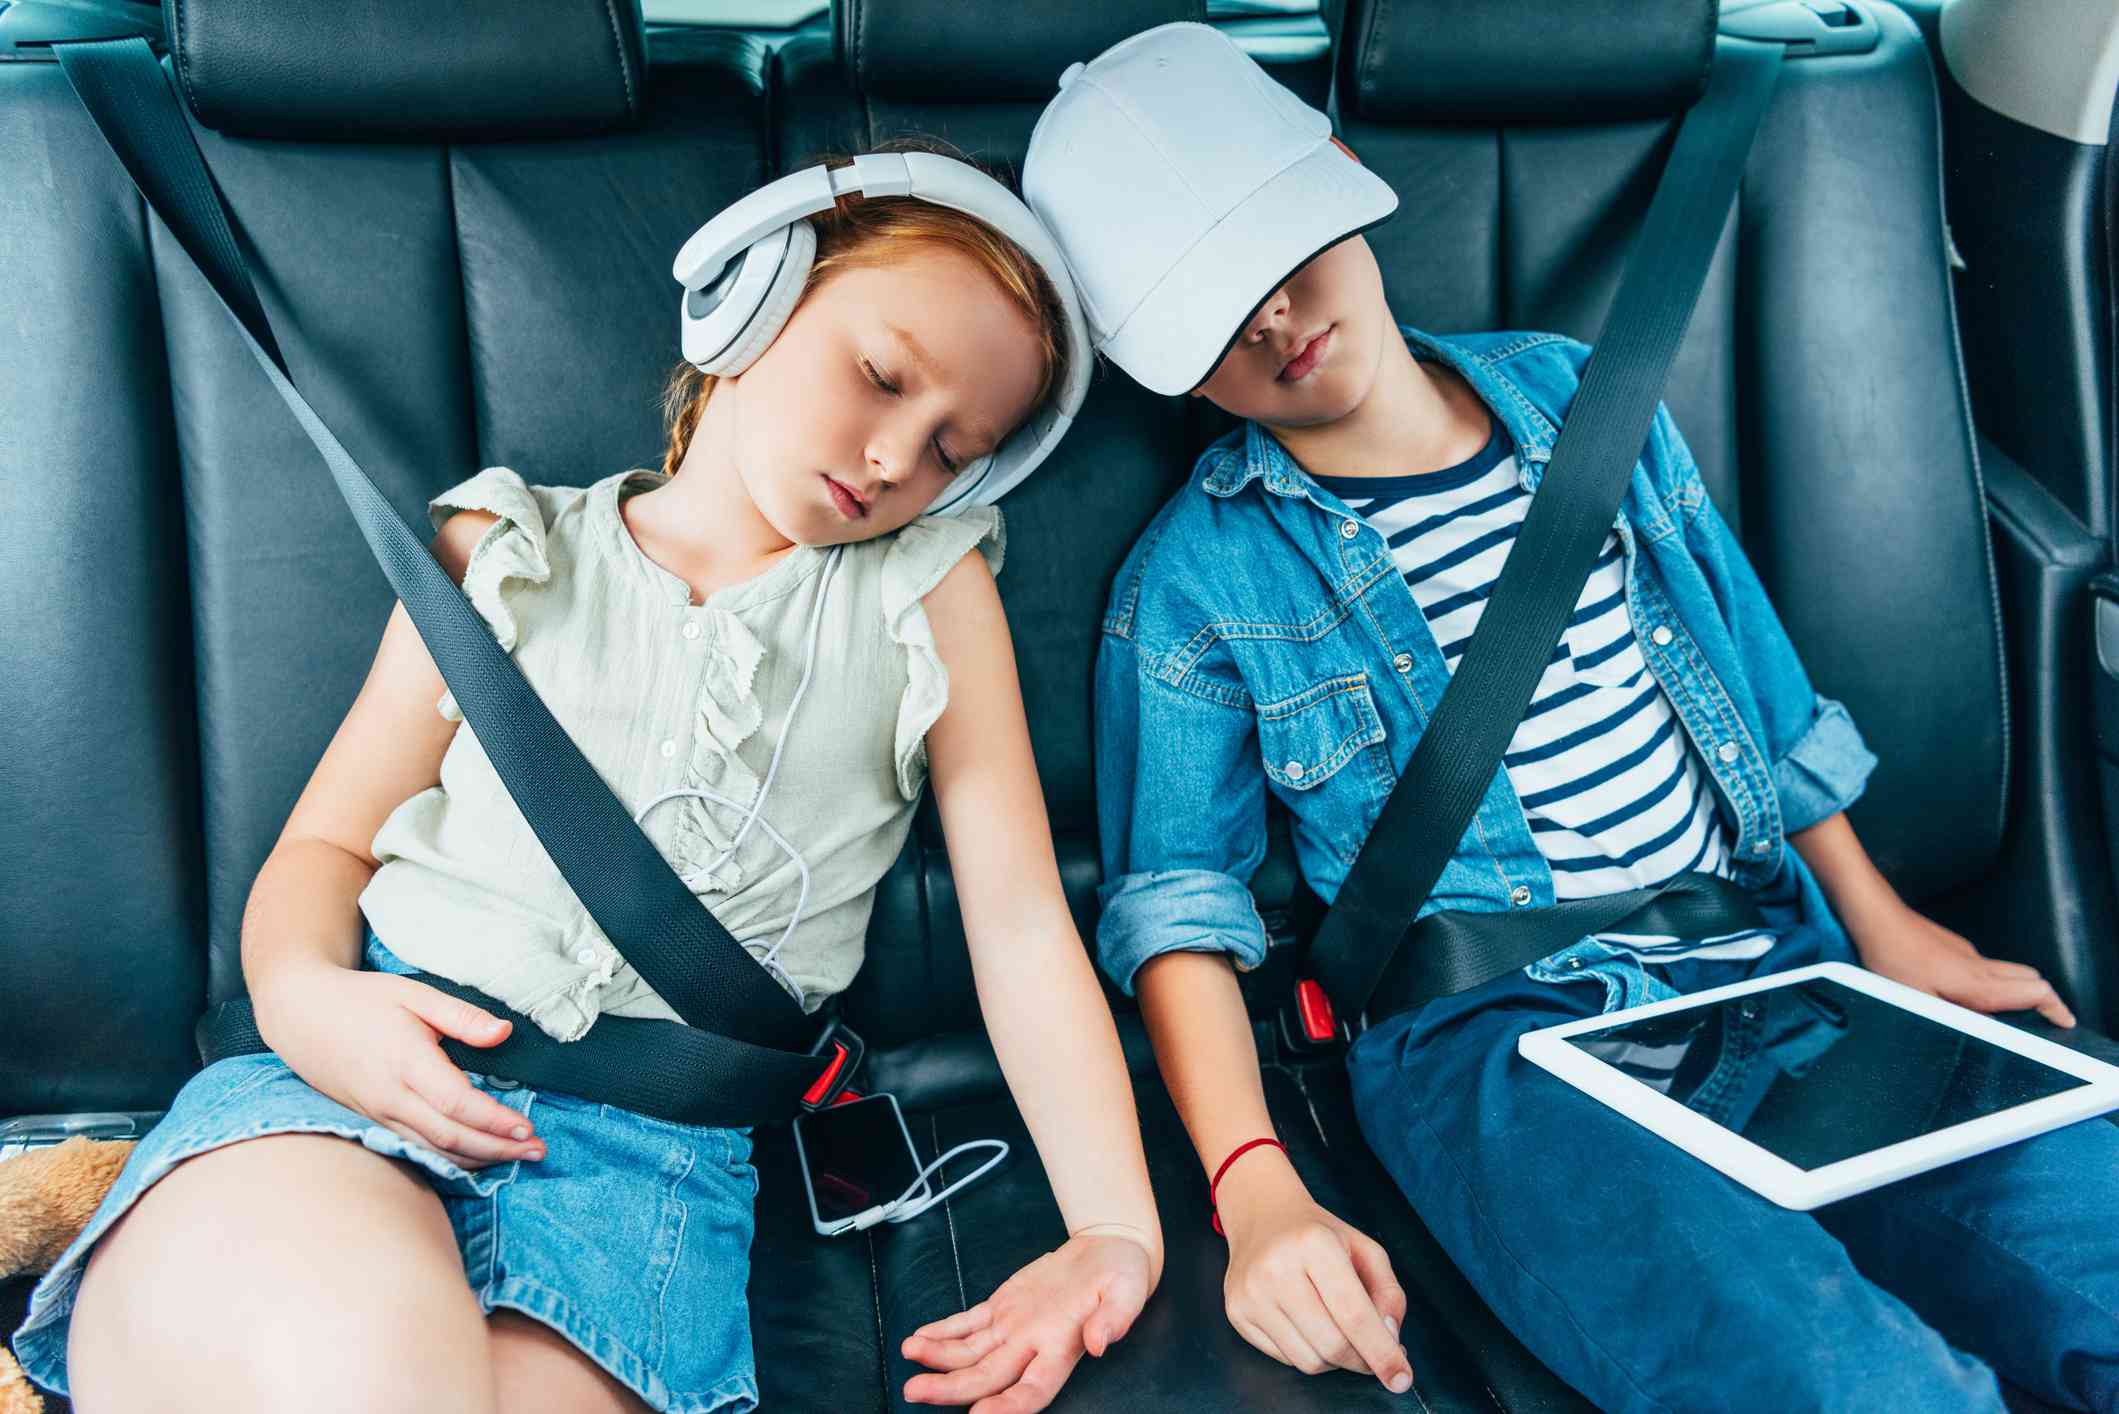 Двоє дітей спали в машині, тримаючи в руках електронні пристрої, які можна було використовувати для шкільних робіт. 